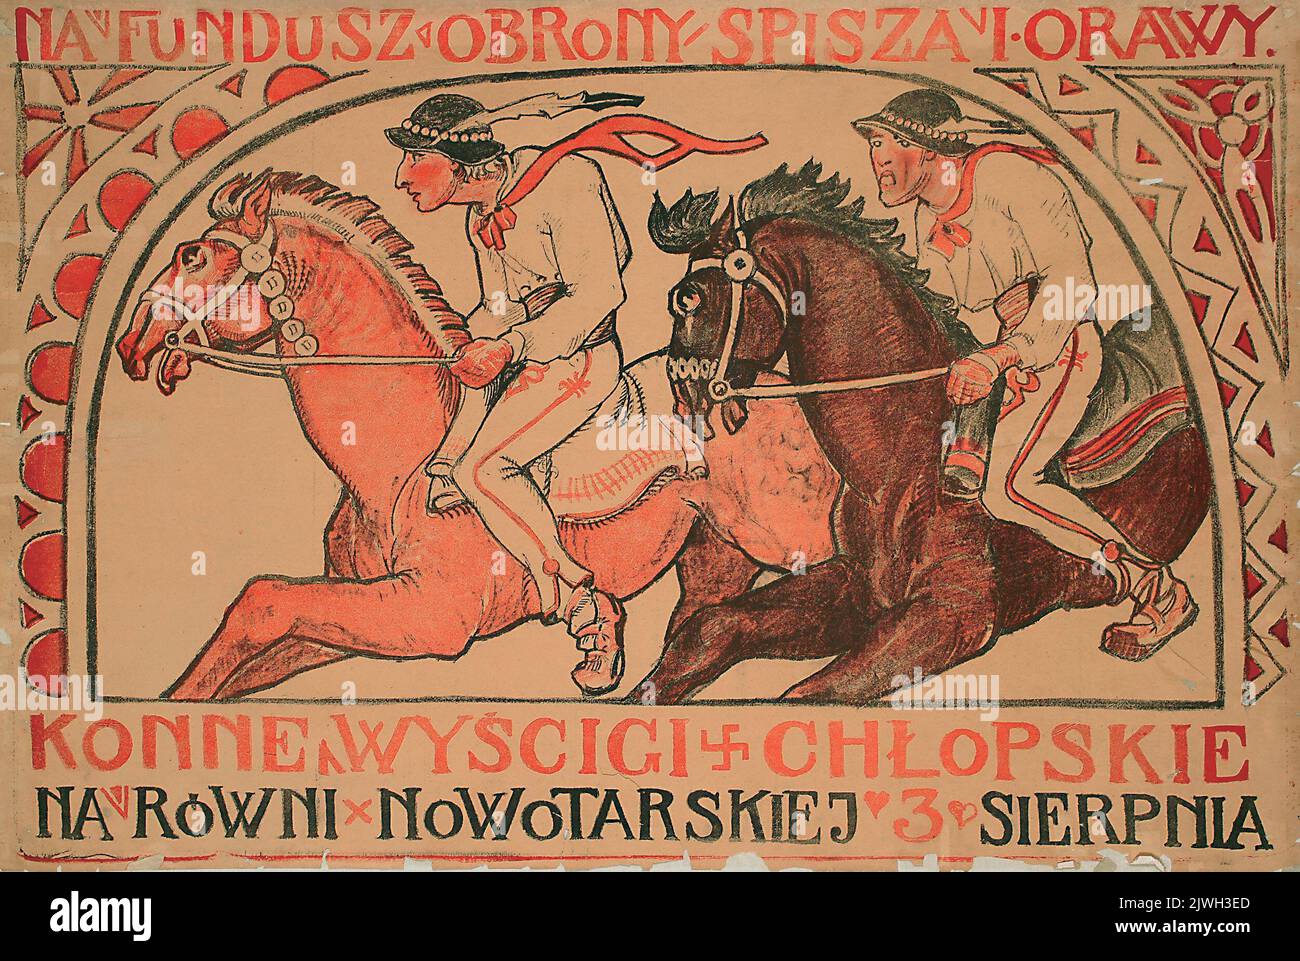 Konne wyścigi chłopskie na równi nowotarskiej. Sichulski, Kazimierz (1879-1942), autore, sconosciuto, editore Foto Stock